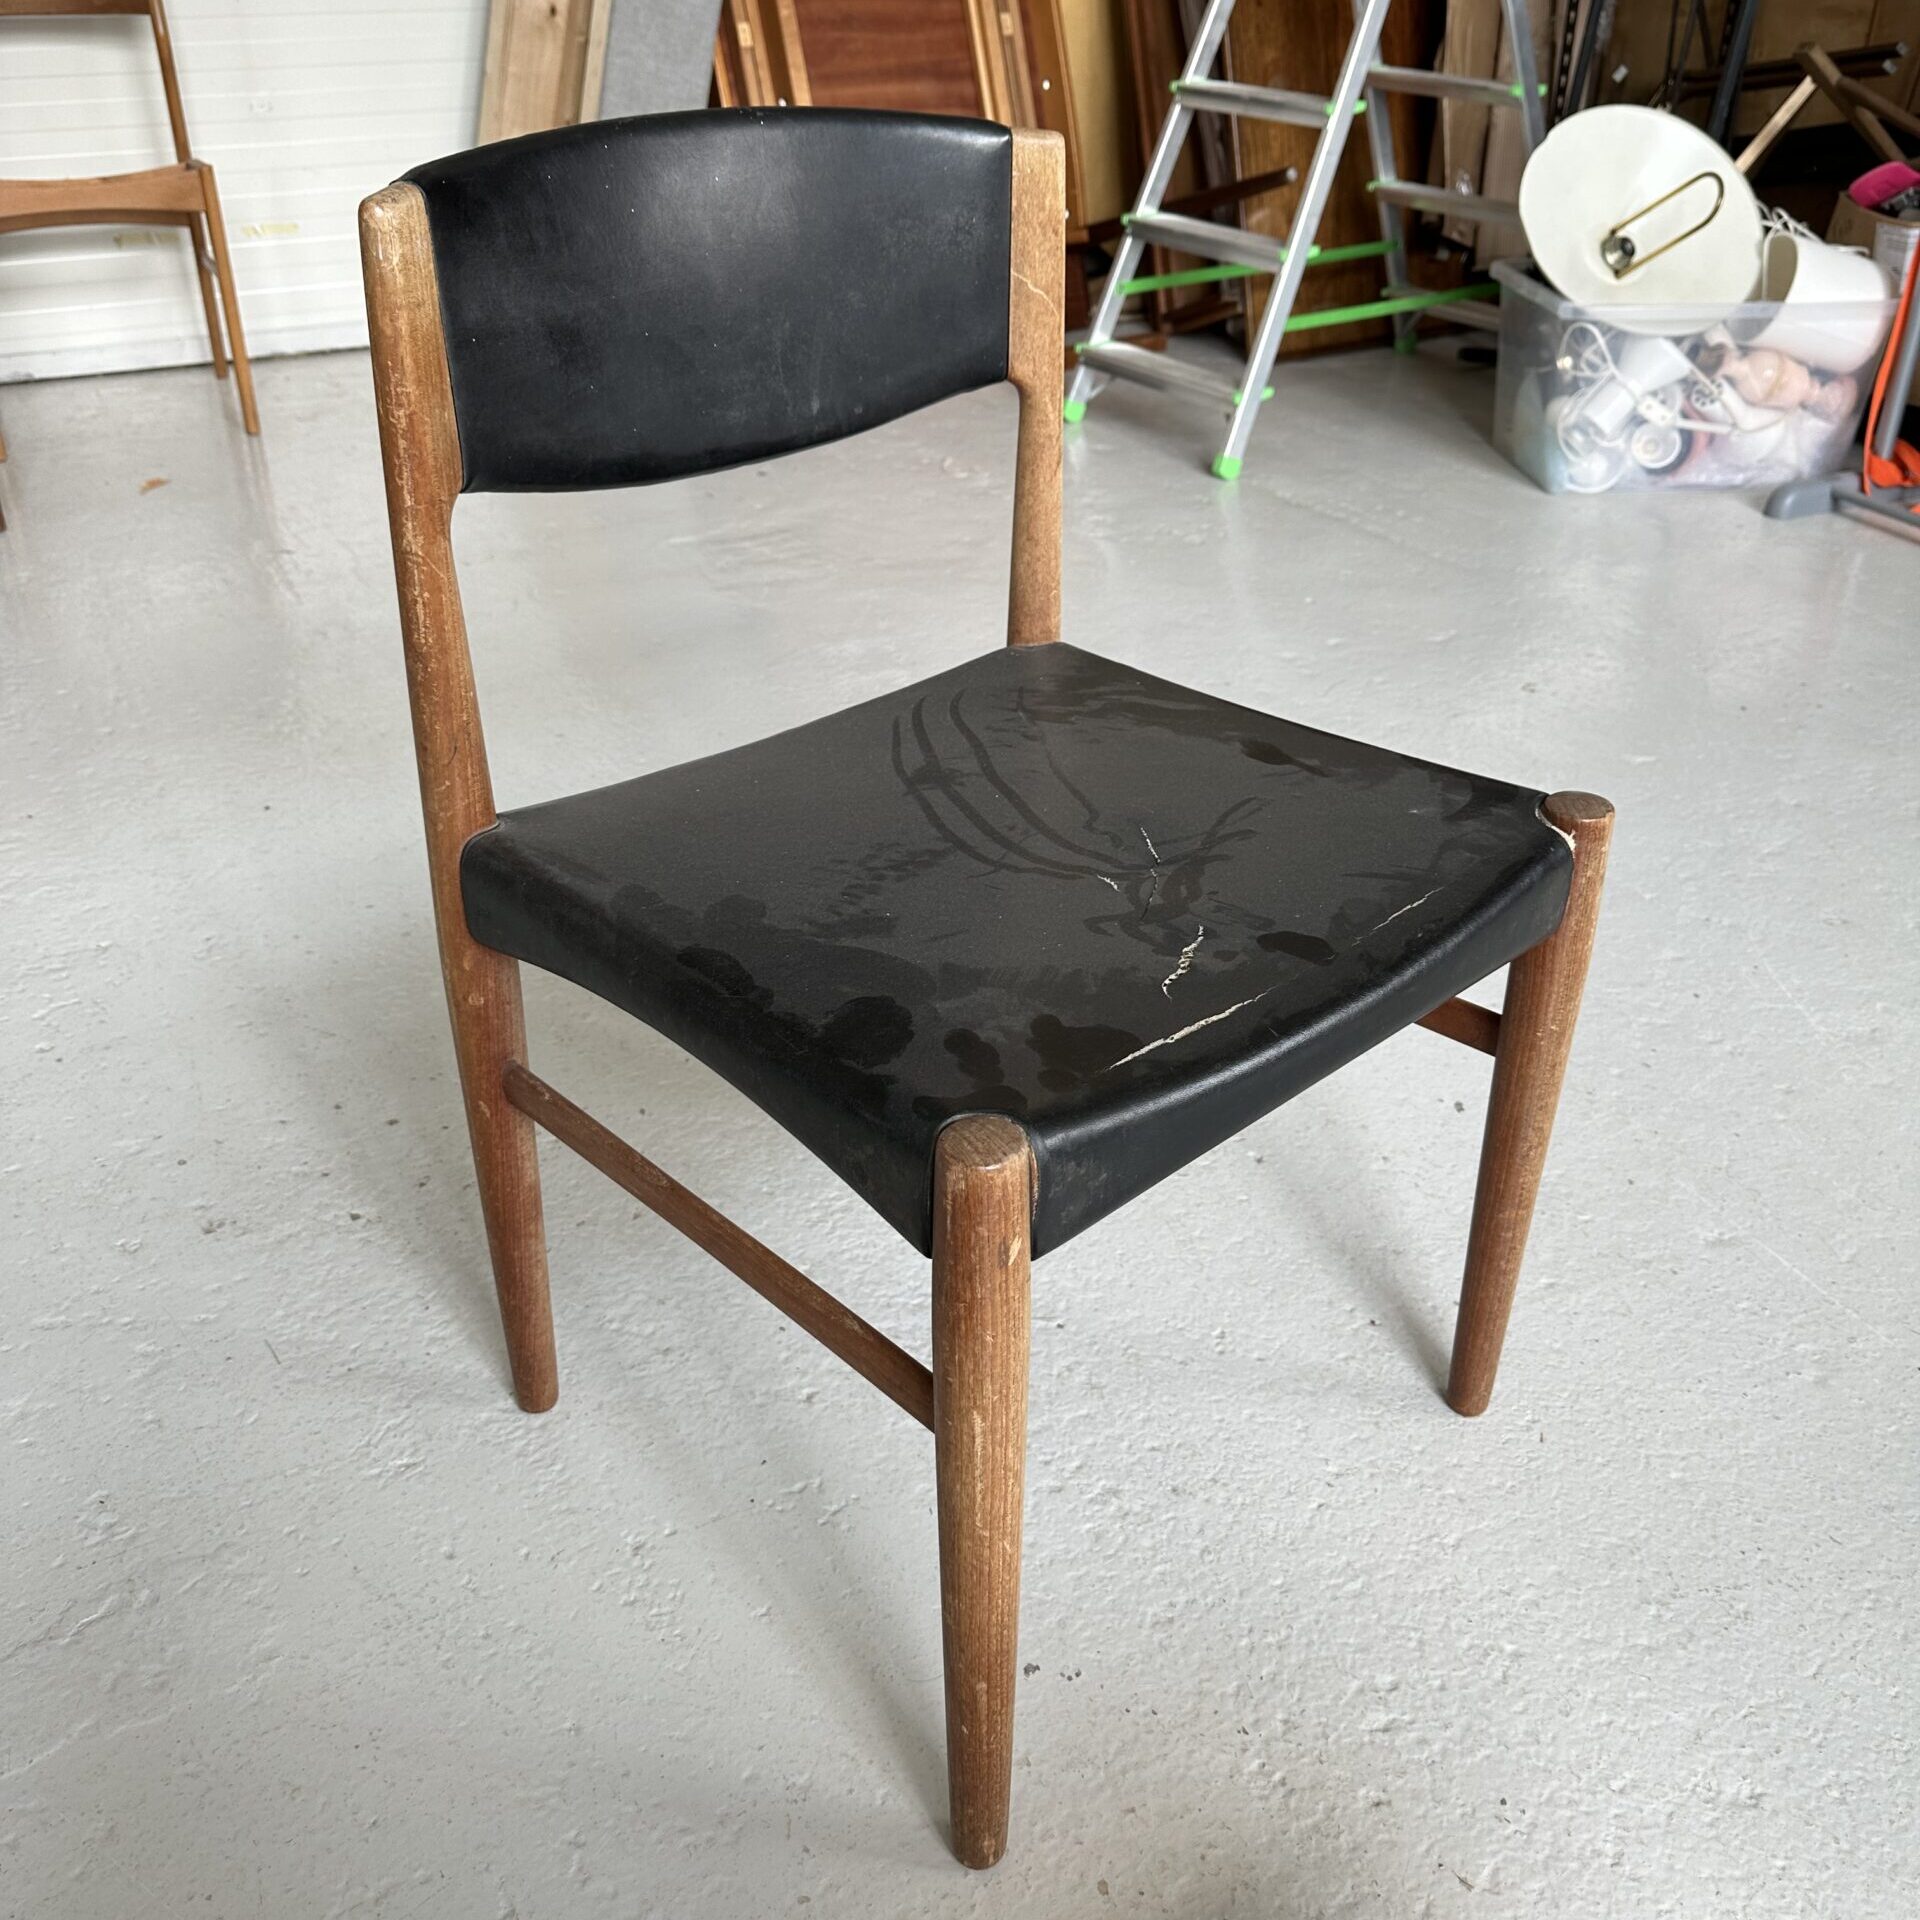 Glostrup chair – Grete Jalk